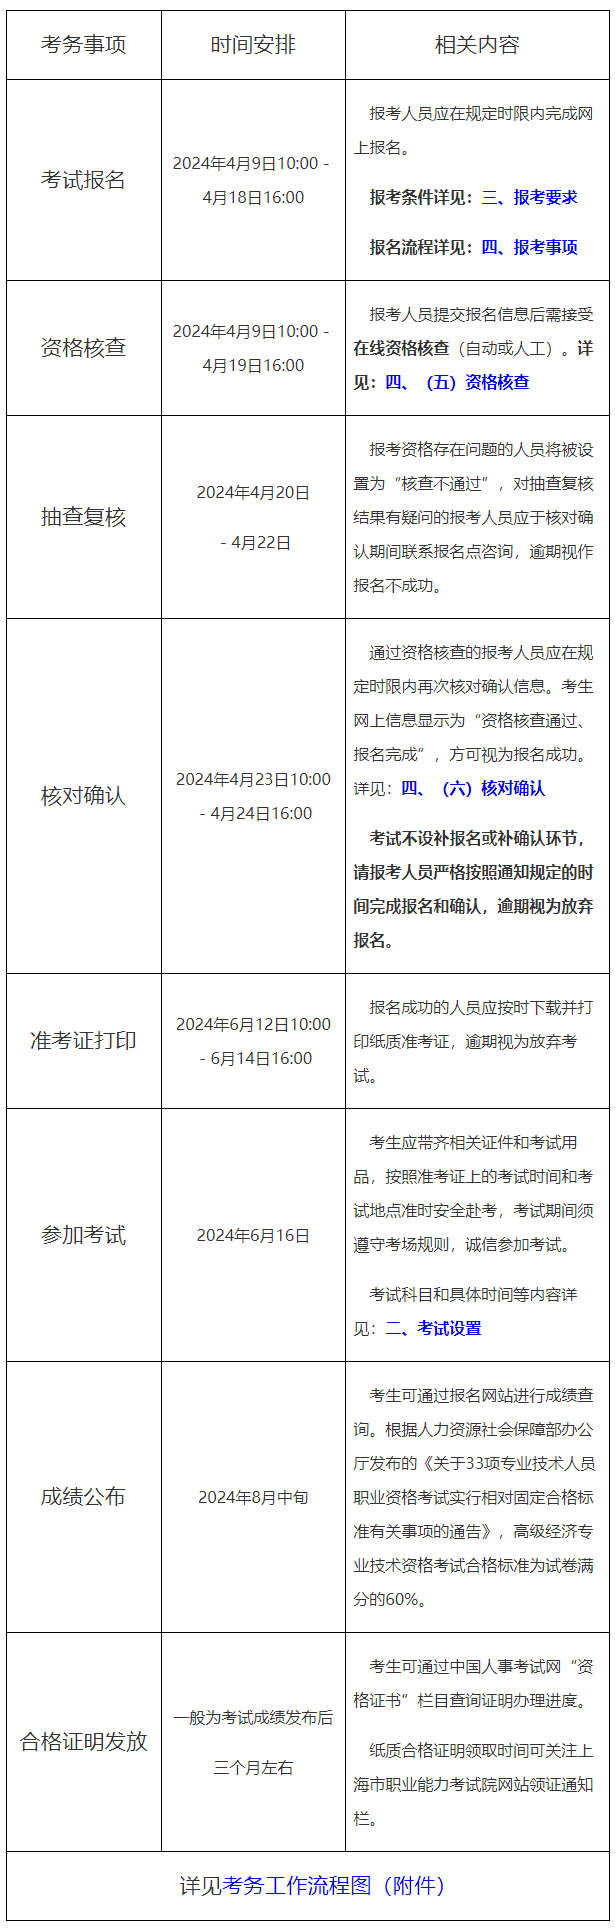 上海市2024年度全国高级经济专业技术资格考试考务工作安排